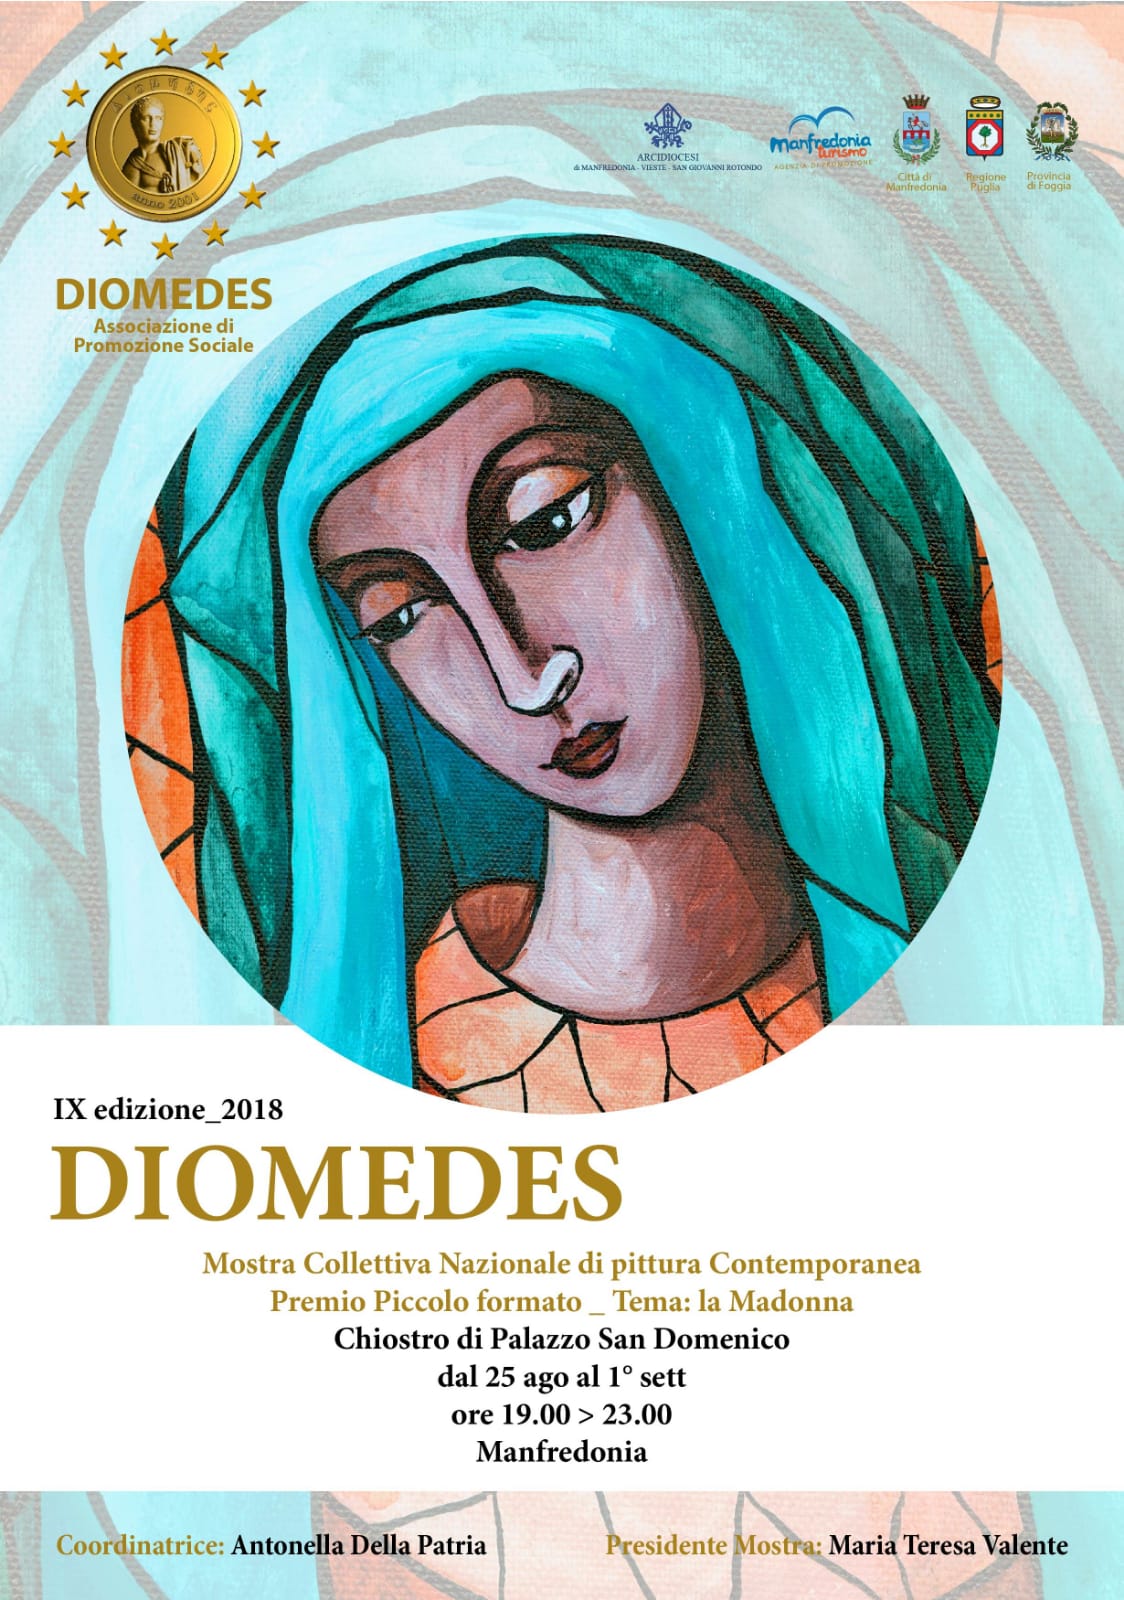 Conto alla rovescia per la mostra Diomedes dedicata alla Madonna